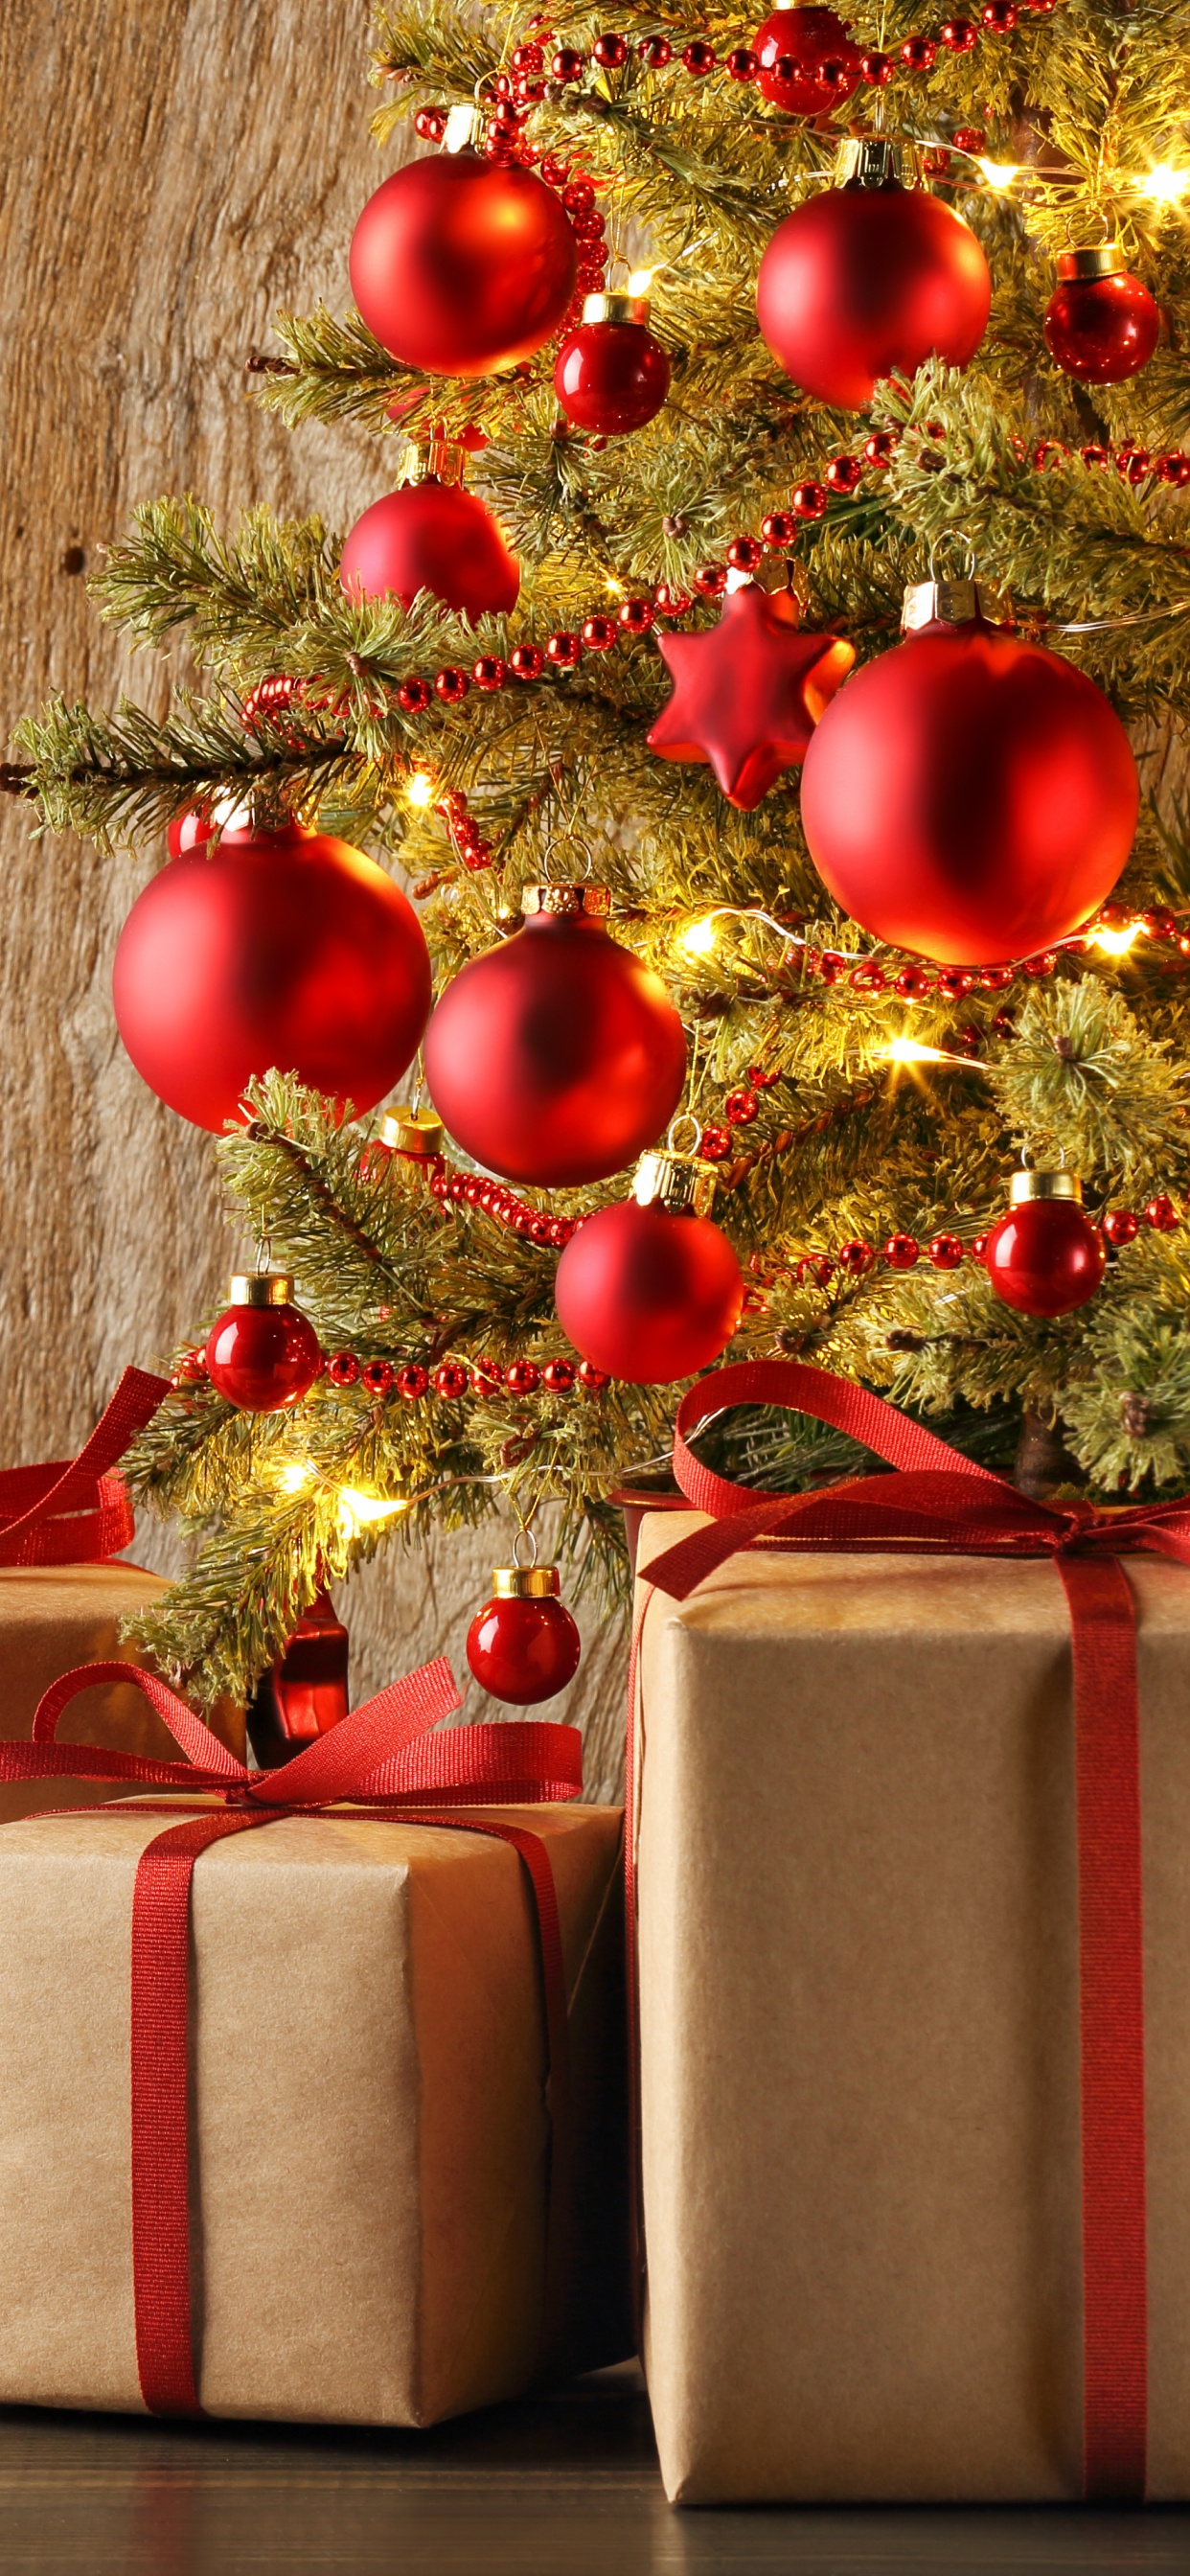 圣诞节那天, 礼物, 圣诞节的装饰品, 礼品包装, 新的一年 壁纸 1242x2688 允许